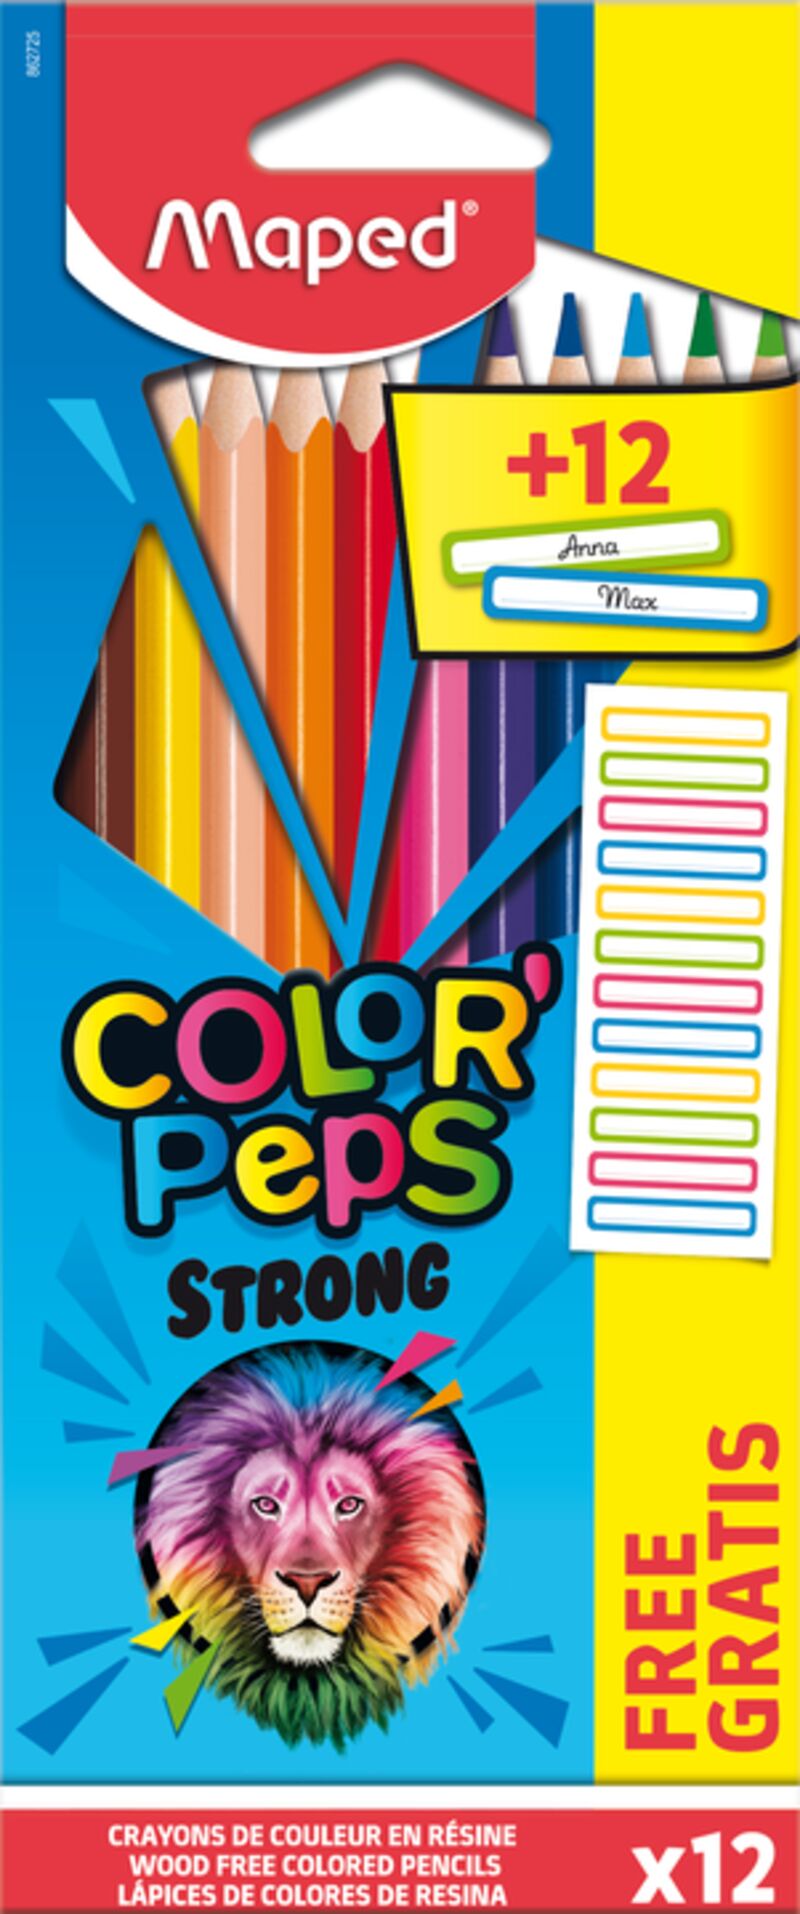 c / 12 lapices colores color peps strong + 12 etiquetas - 